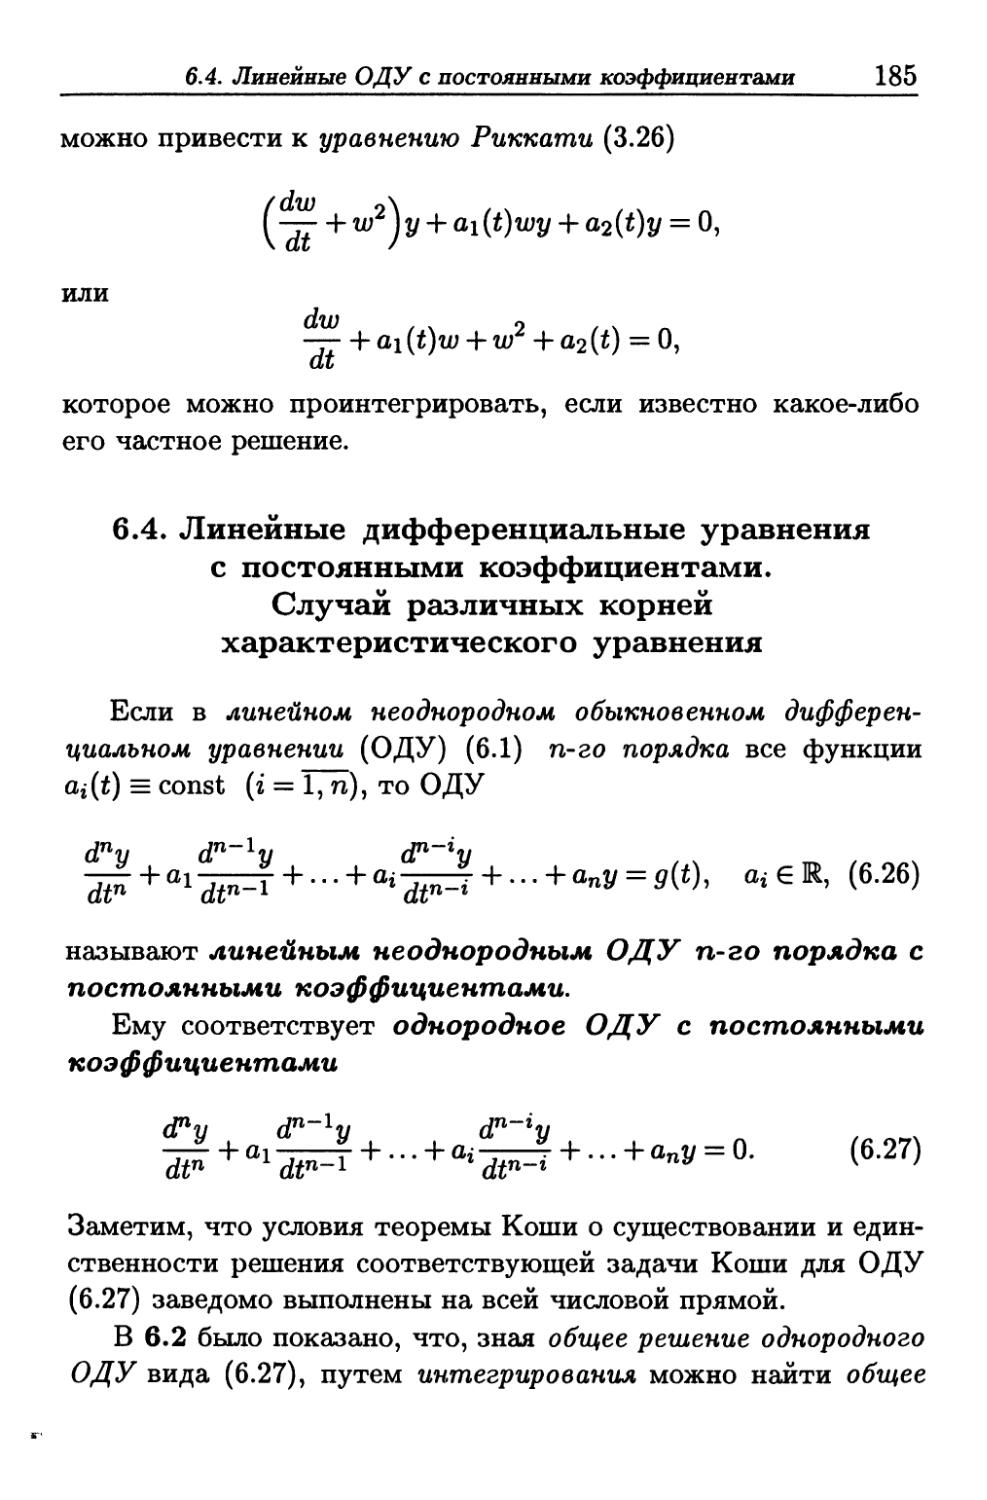 6.4. Линейные дифференциальные уравнения с постоянными коэффициентами. Случай различных корней характеристического уравнения